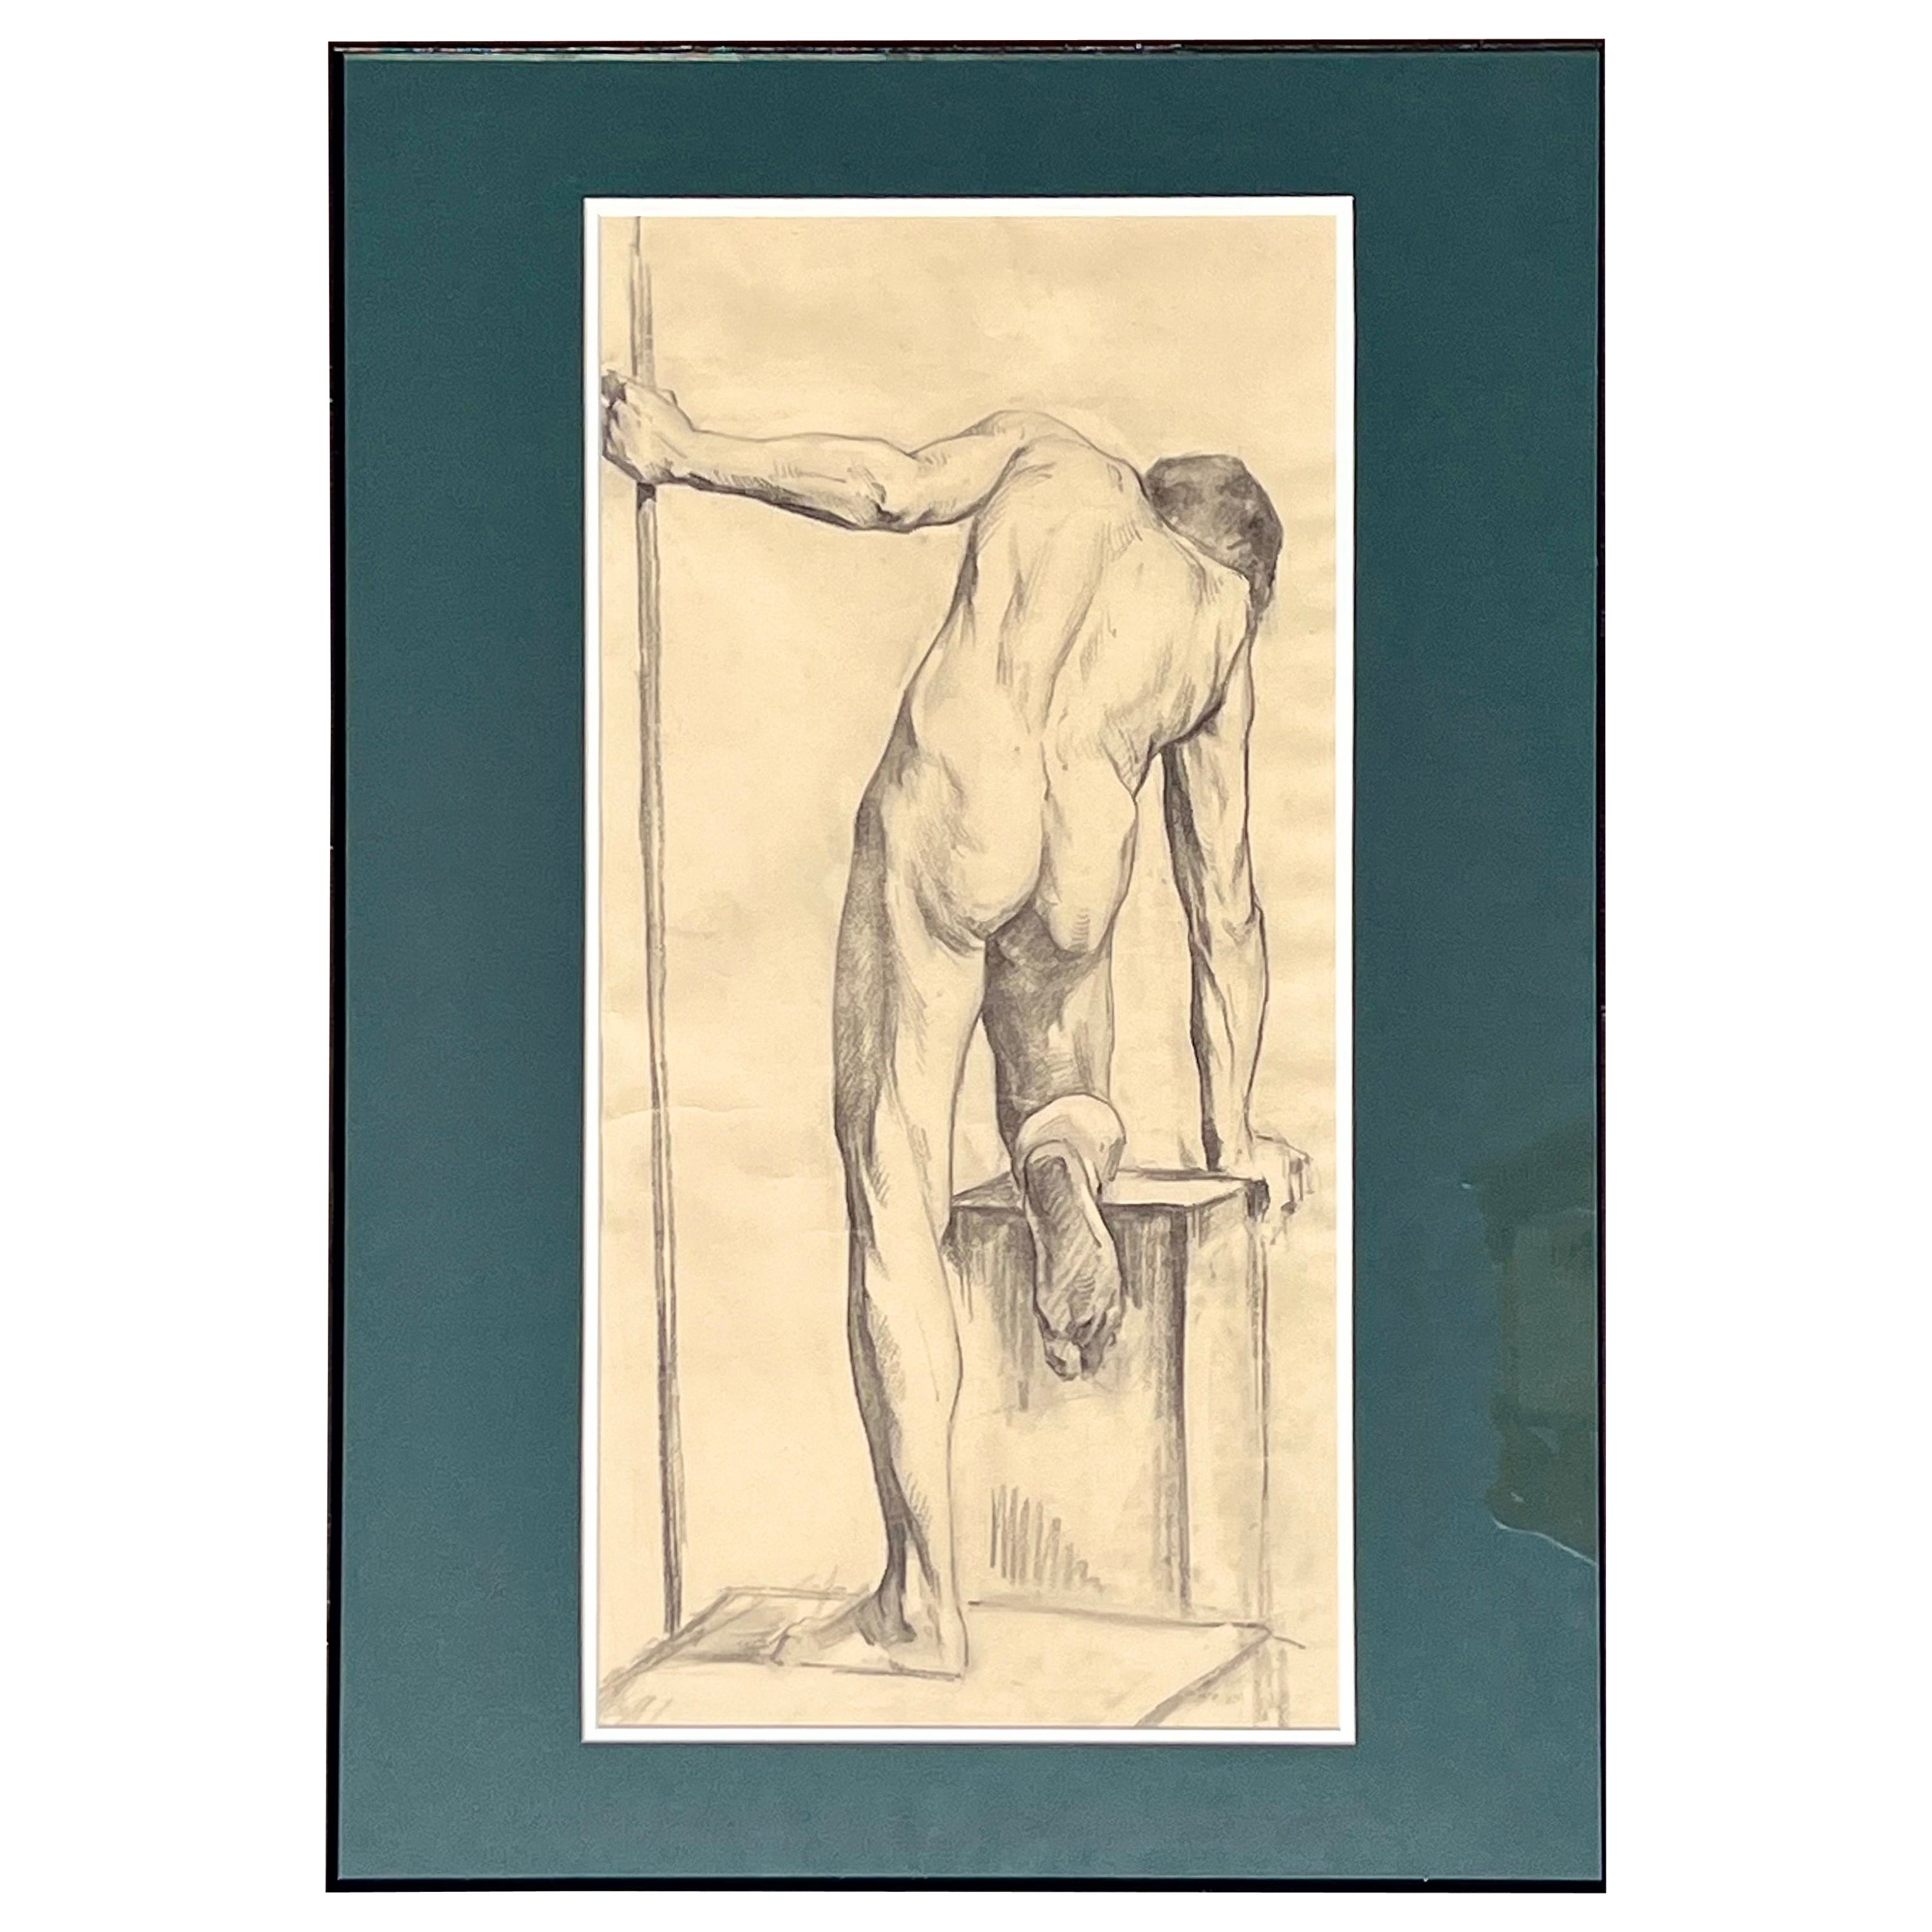 Antike männliche Aktstudie Zeichnung aus Paris, gerahmt in Italien

Zum Verkauf angeboten wird ein spätes 19. Jahrhundert männlichen Akt Kunst Studie Zeichnung in Graphit auf Papier mit großen Details Es gibt 4 Zeichnungen in insgesamt, die einzeln